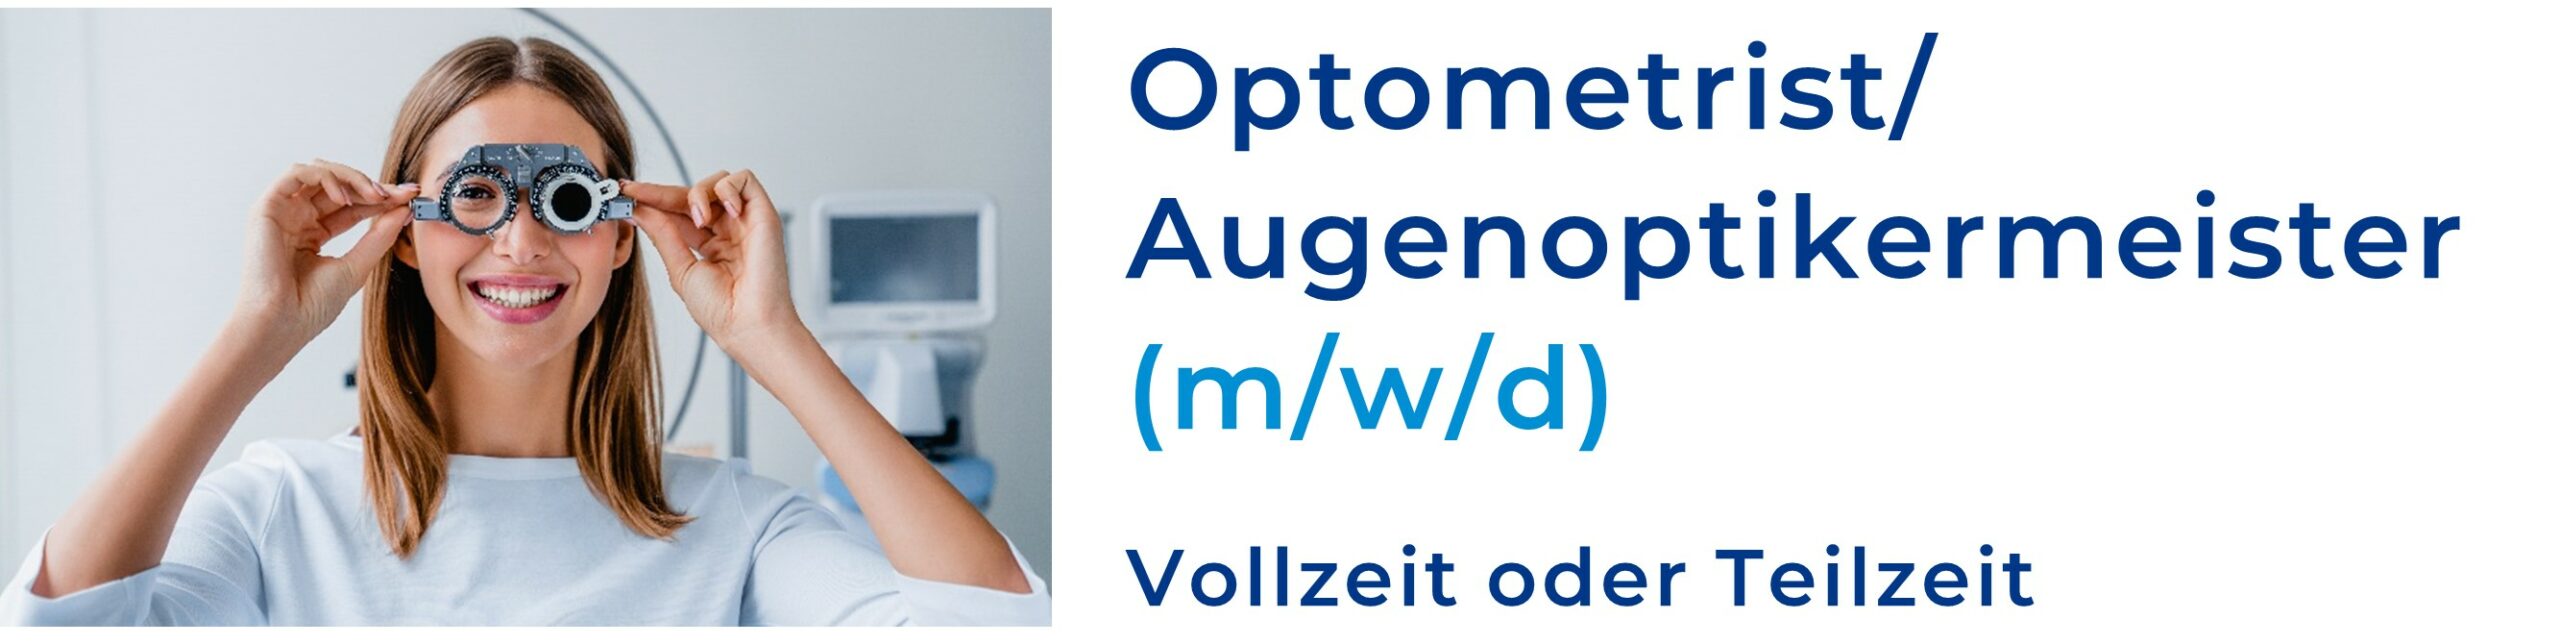 Optometrist / Augenoptikermeiste (m/w/d)